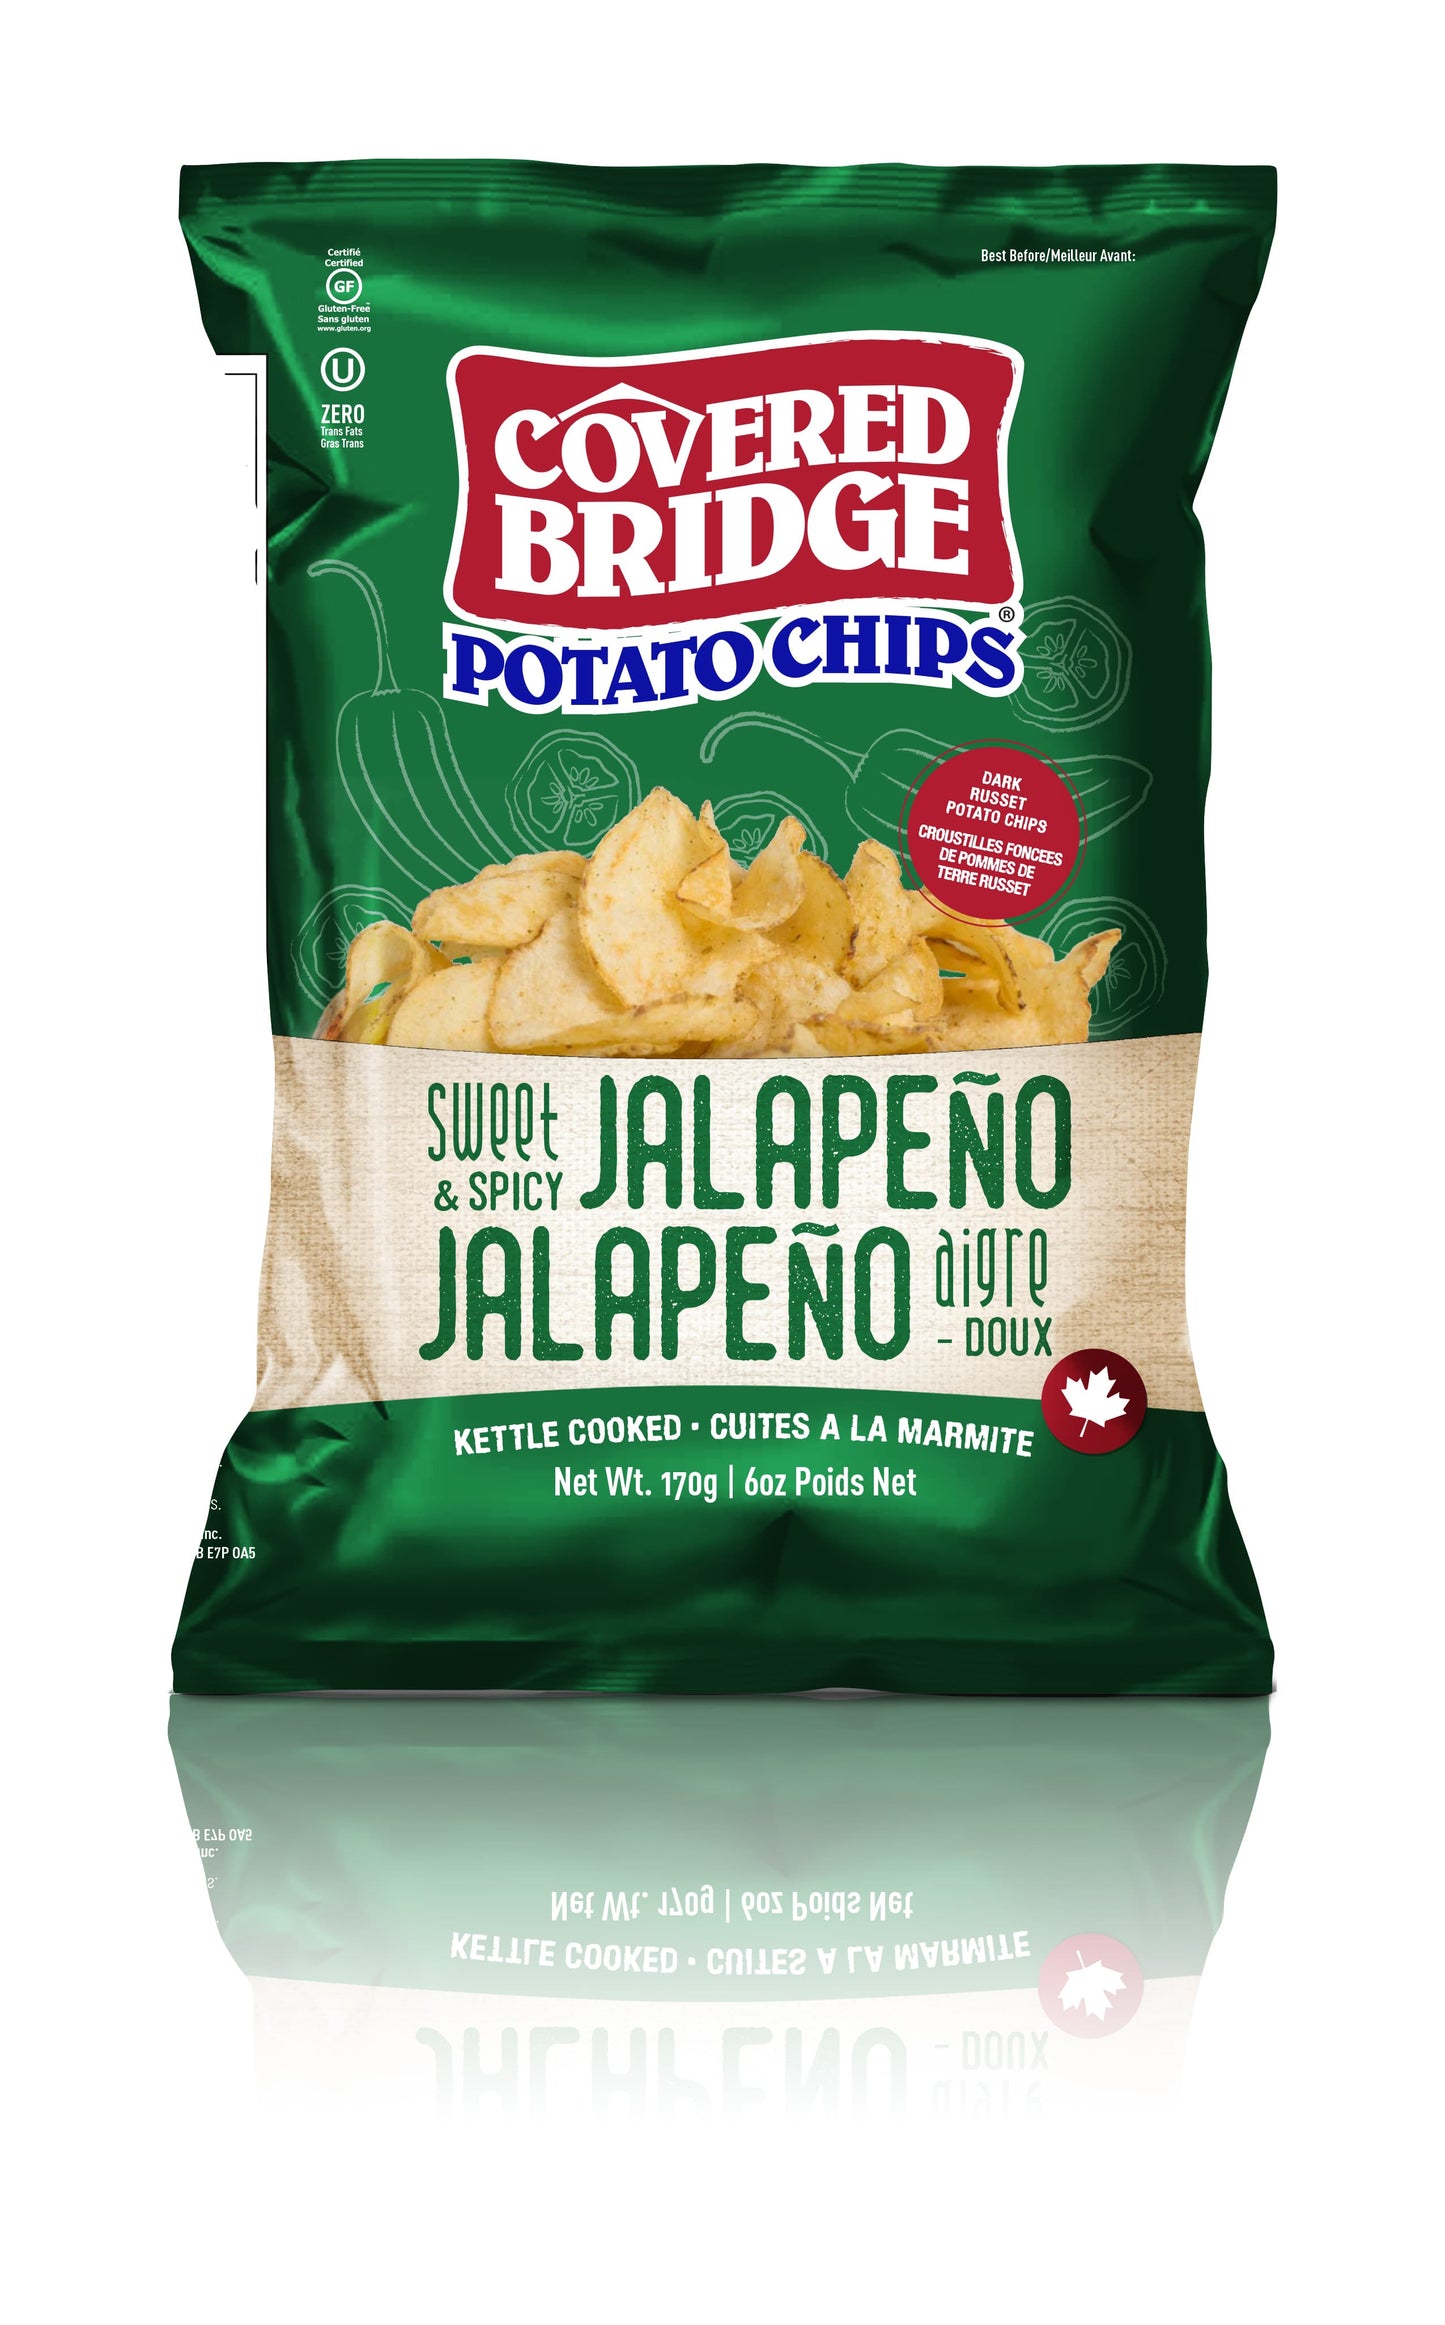 Covered Bridge Potato Chips Full Size Bag, Case of 12 x 142g-170g